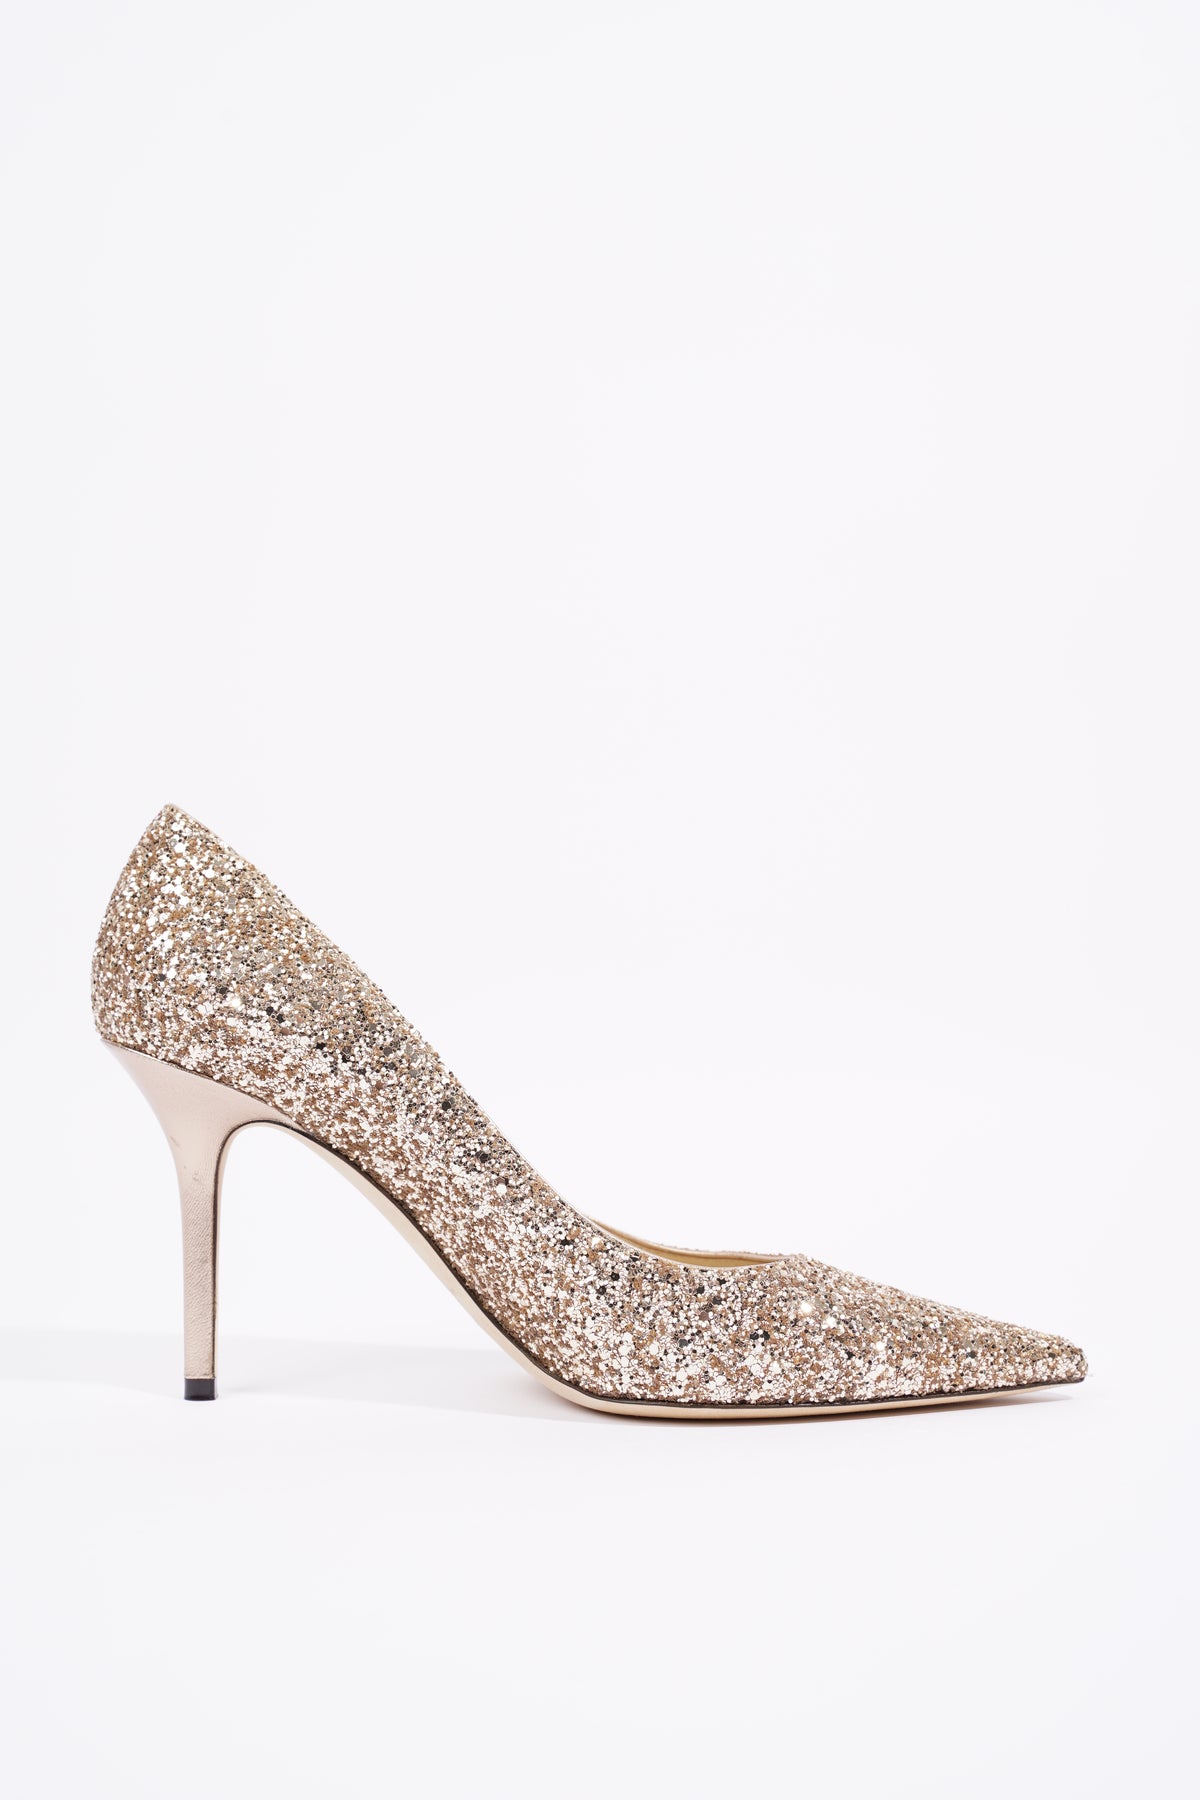 Selling Unused Jimmy Choo Sacaria heels! Size 38. : r/weddingswap